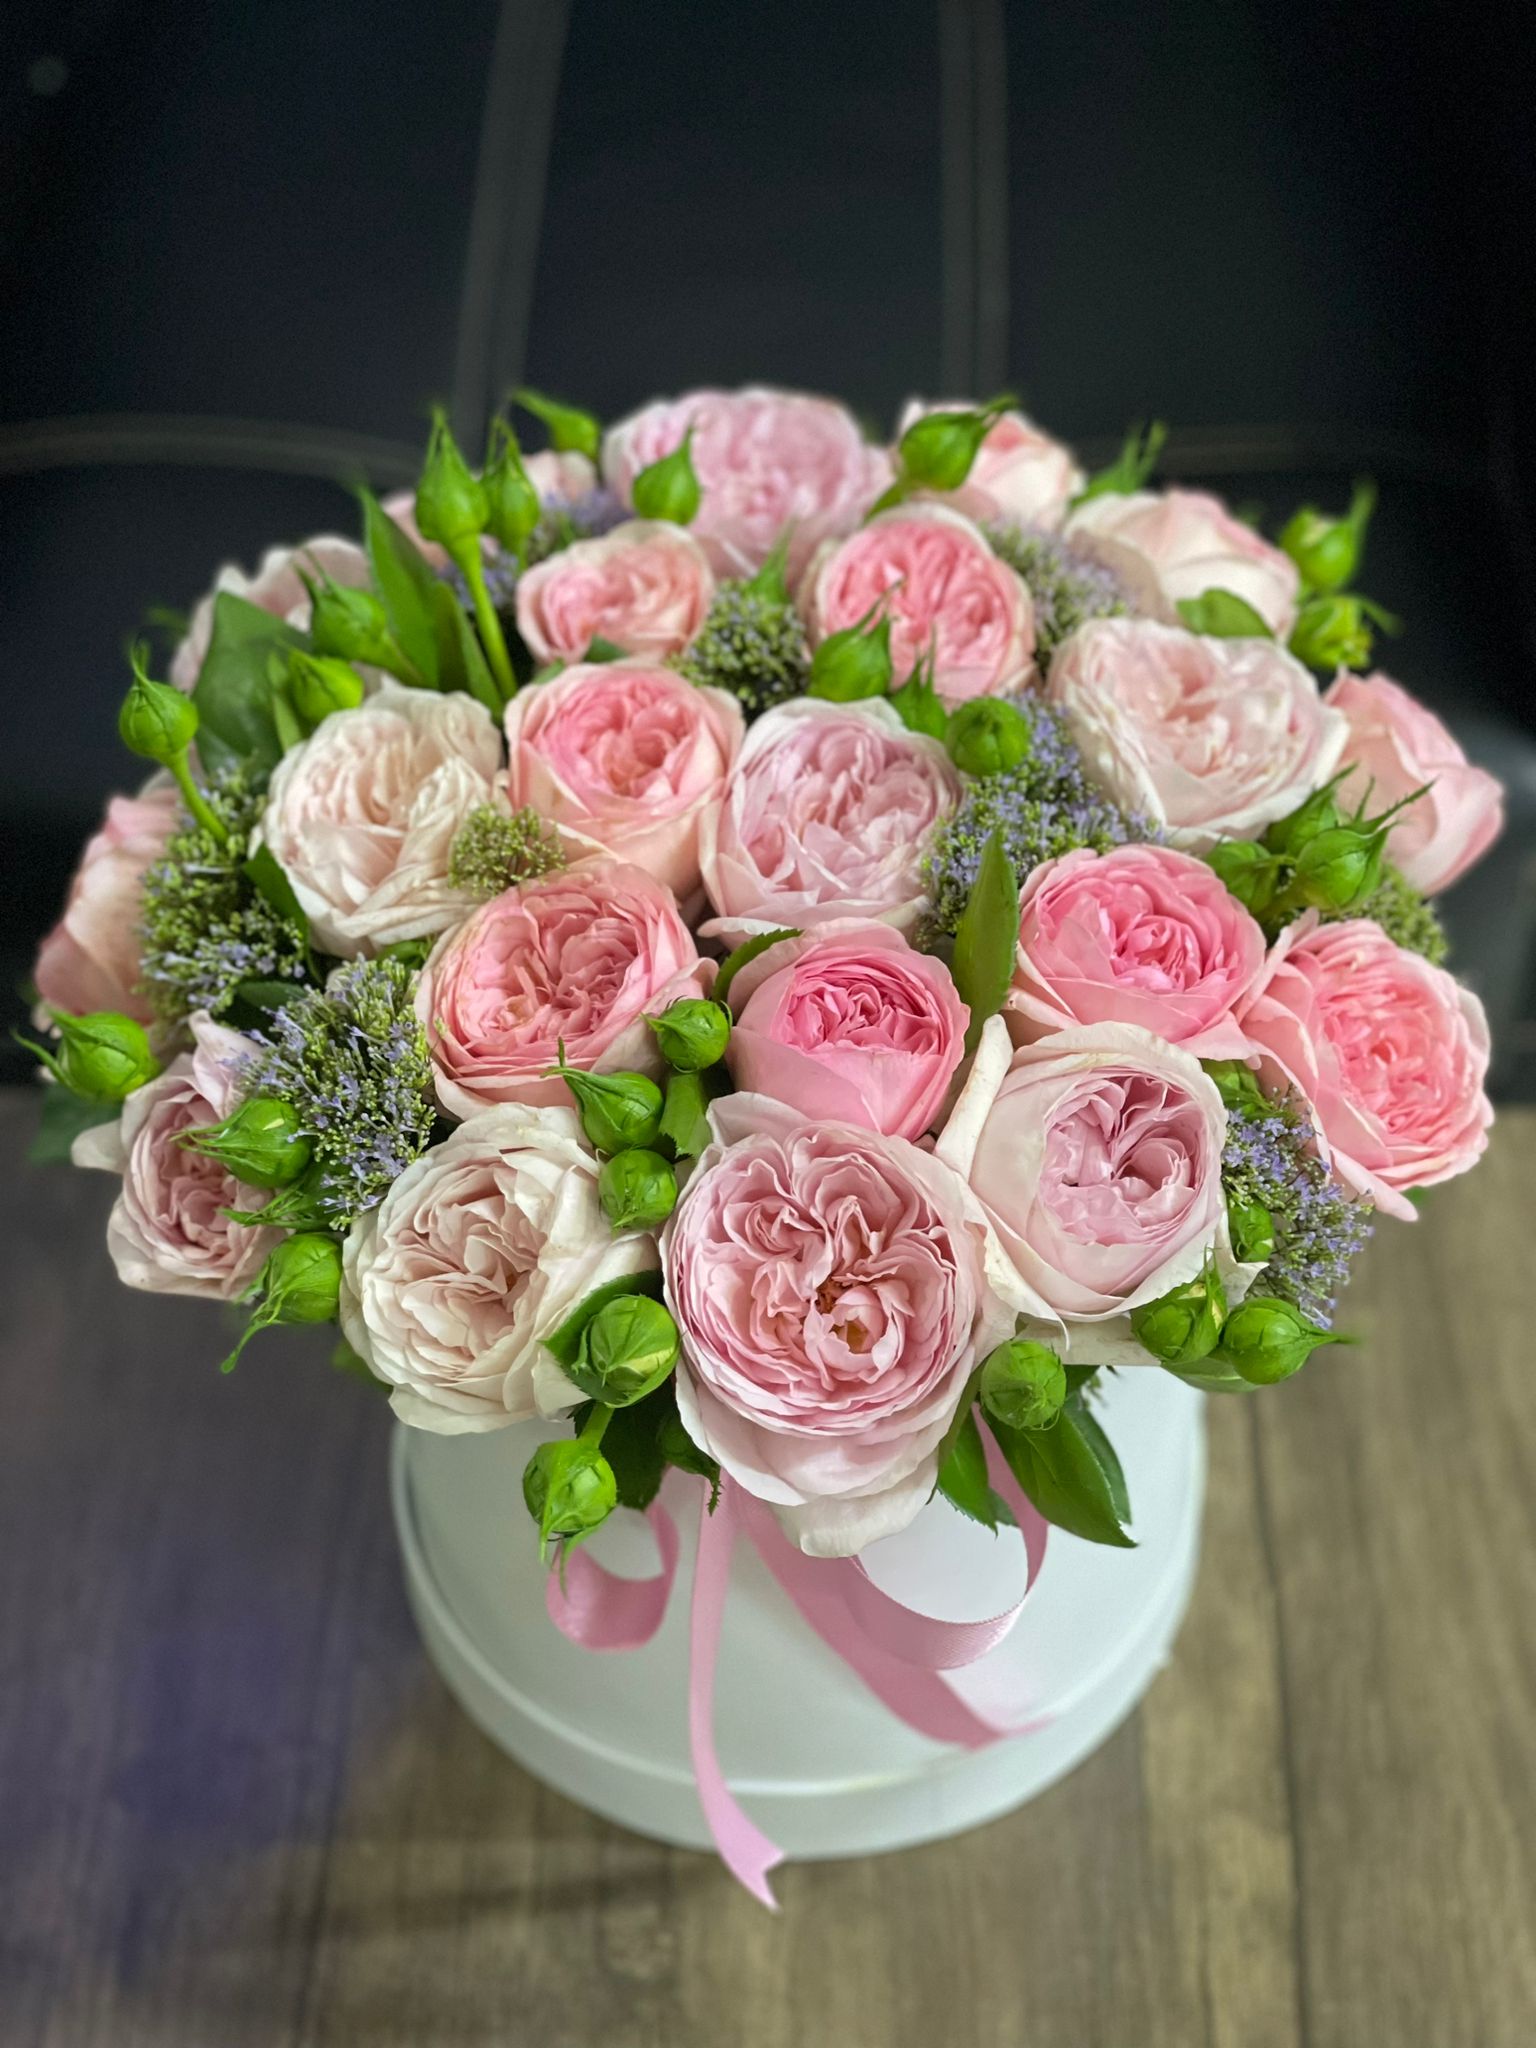  Цветок в Кемер  21 штука пионовидных роз в белой коробке